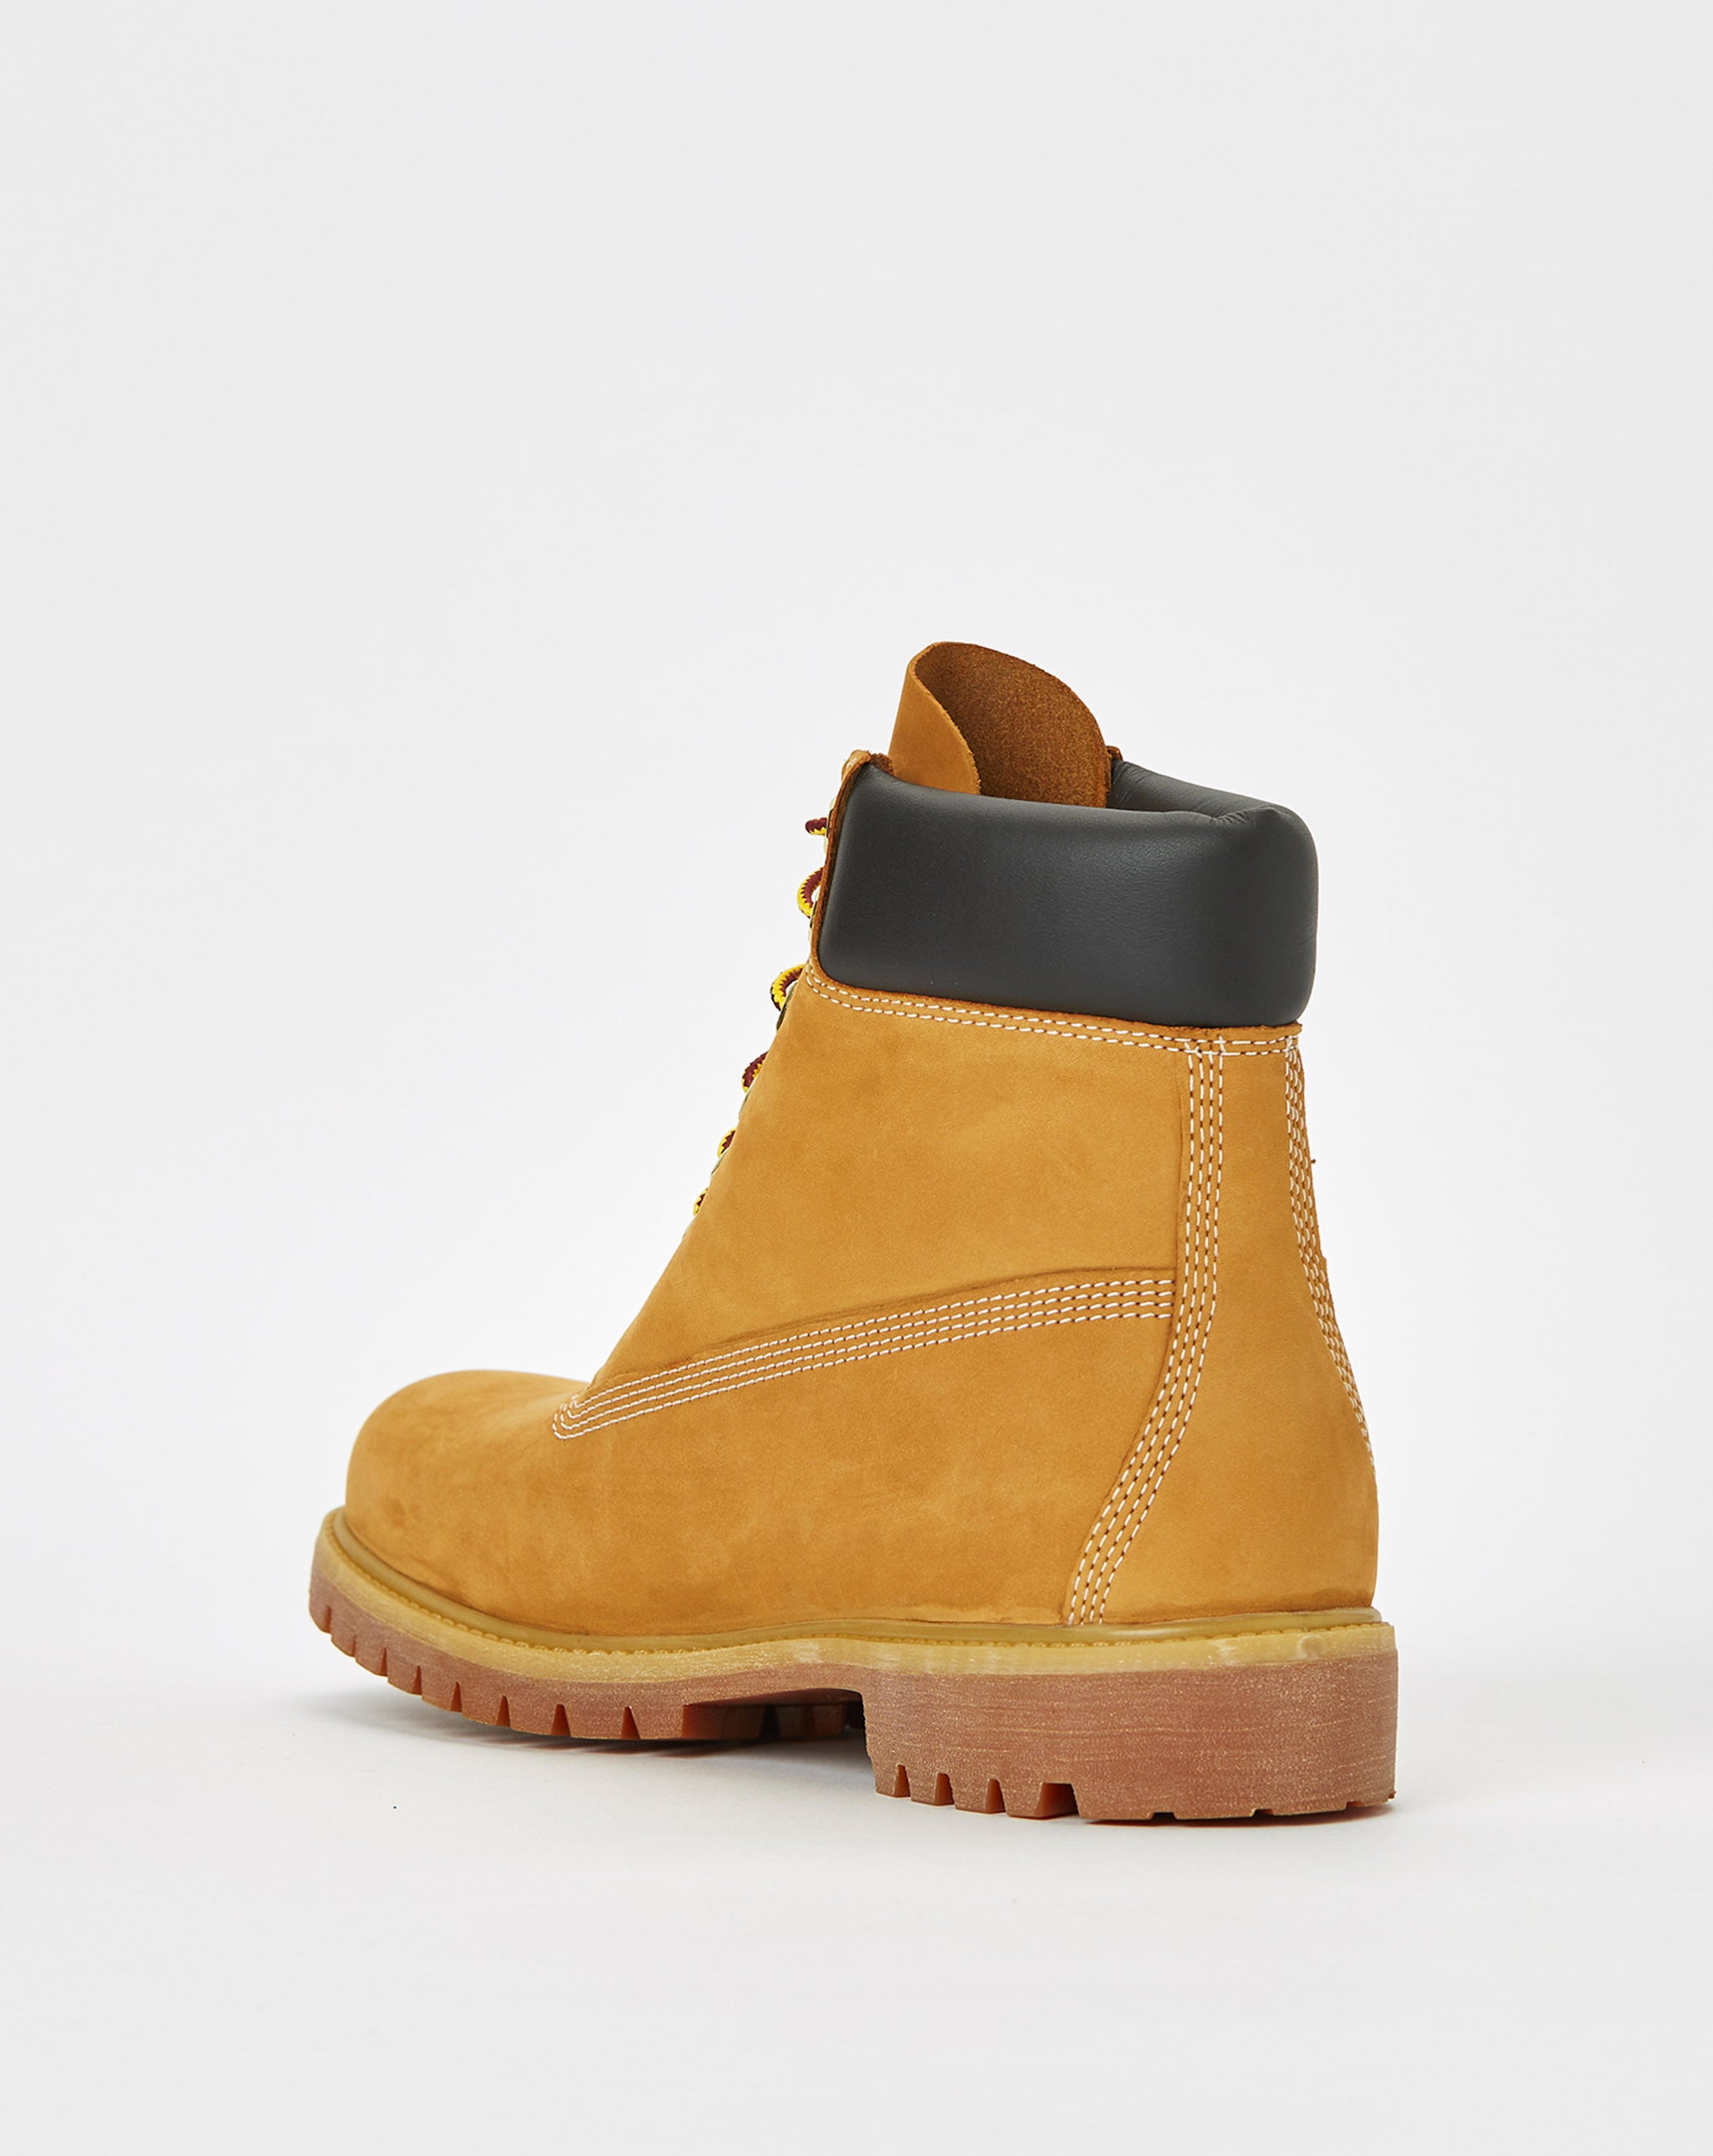 Timberland 6" Premium Boots  - Cheap Urlfreeze Jordan outlet